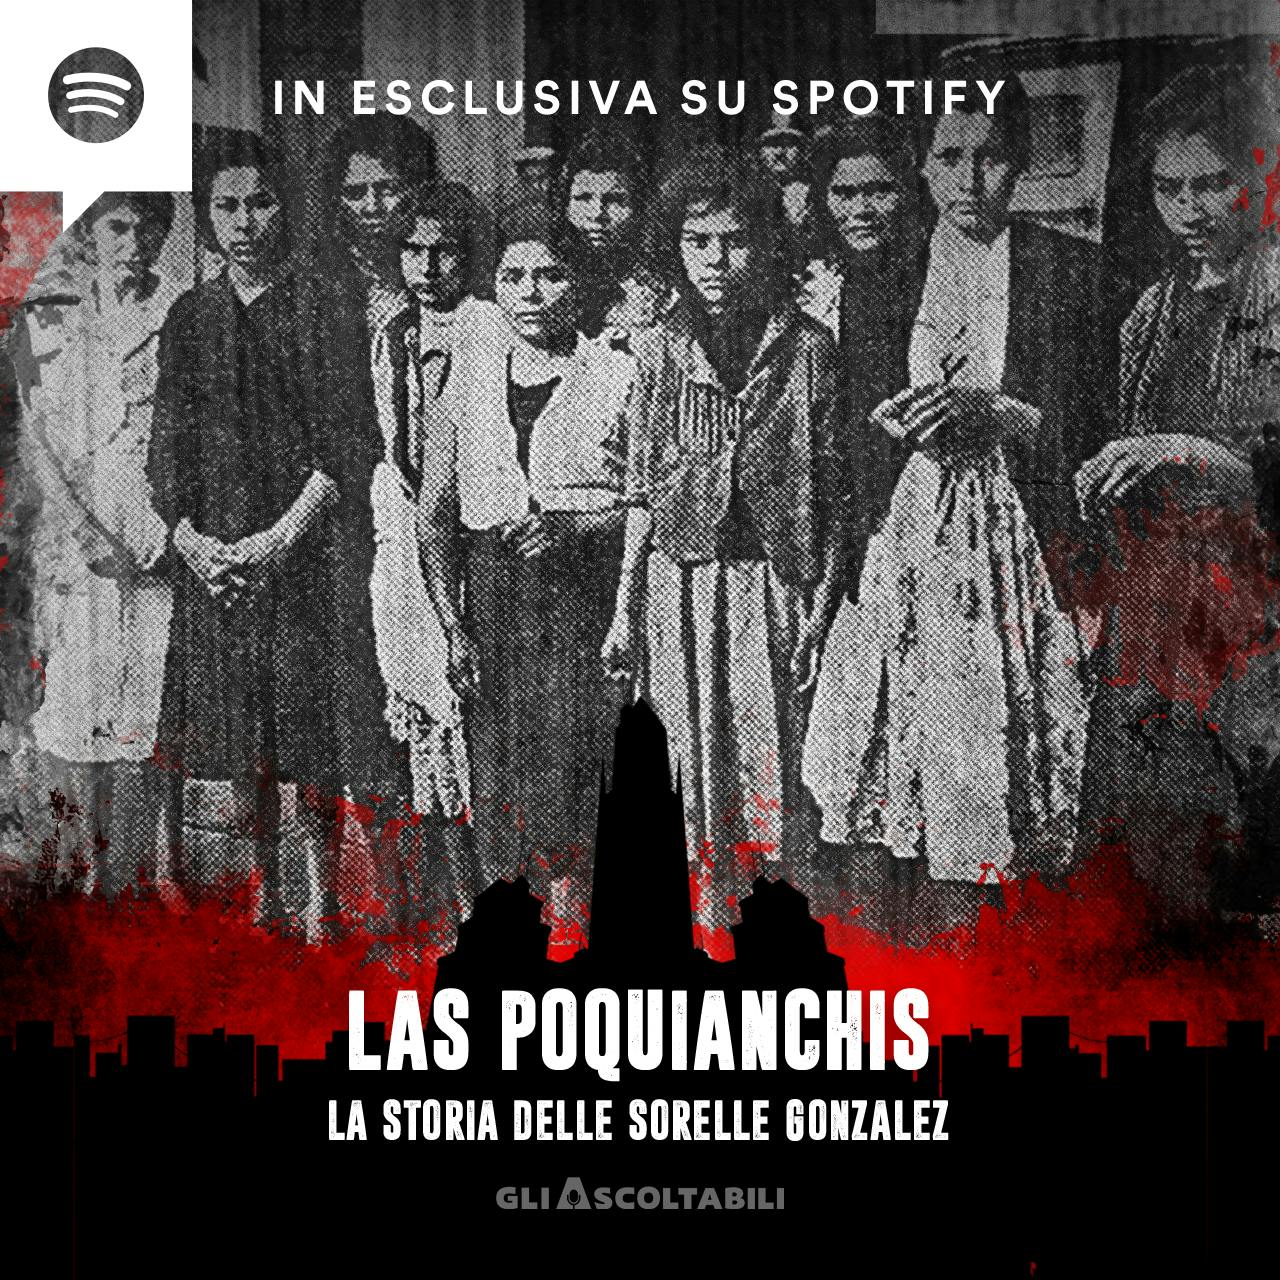 Las Poquianchis – La storia delle sorelle Gonzalez